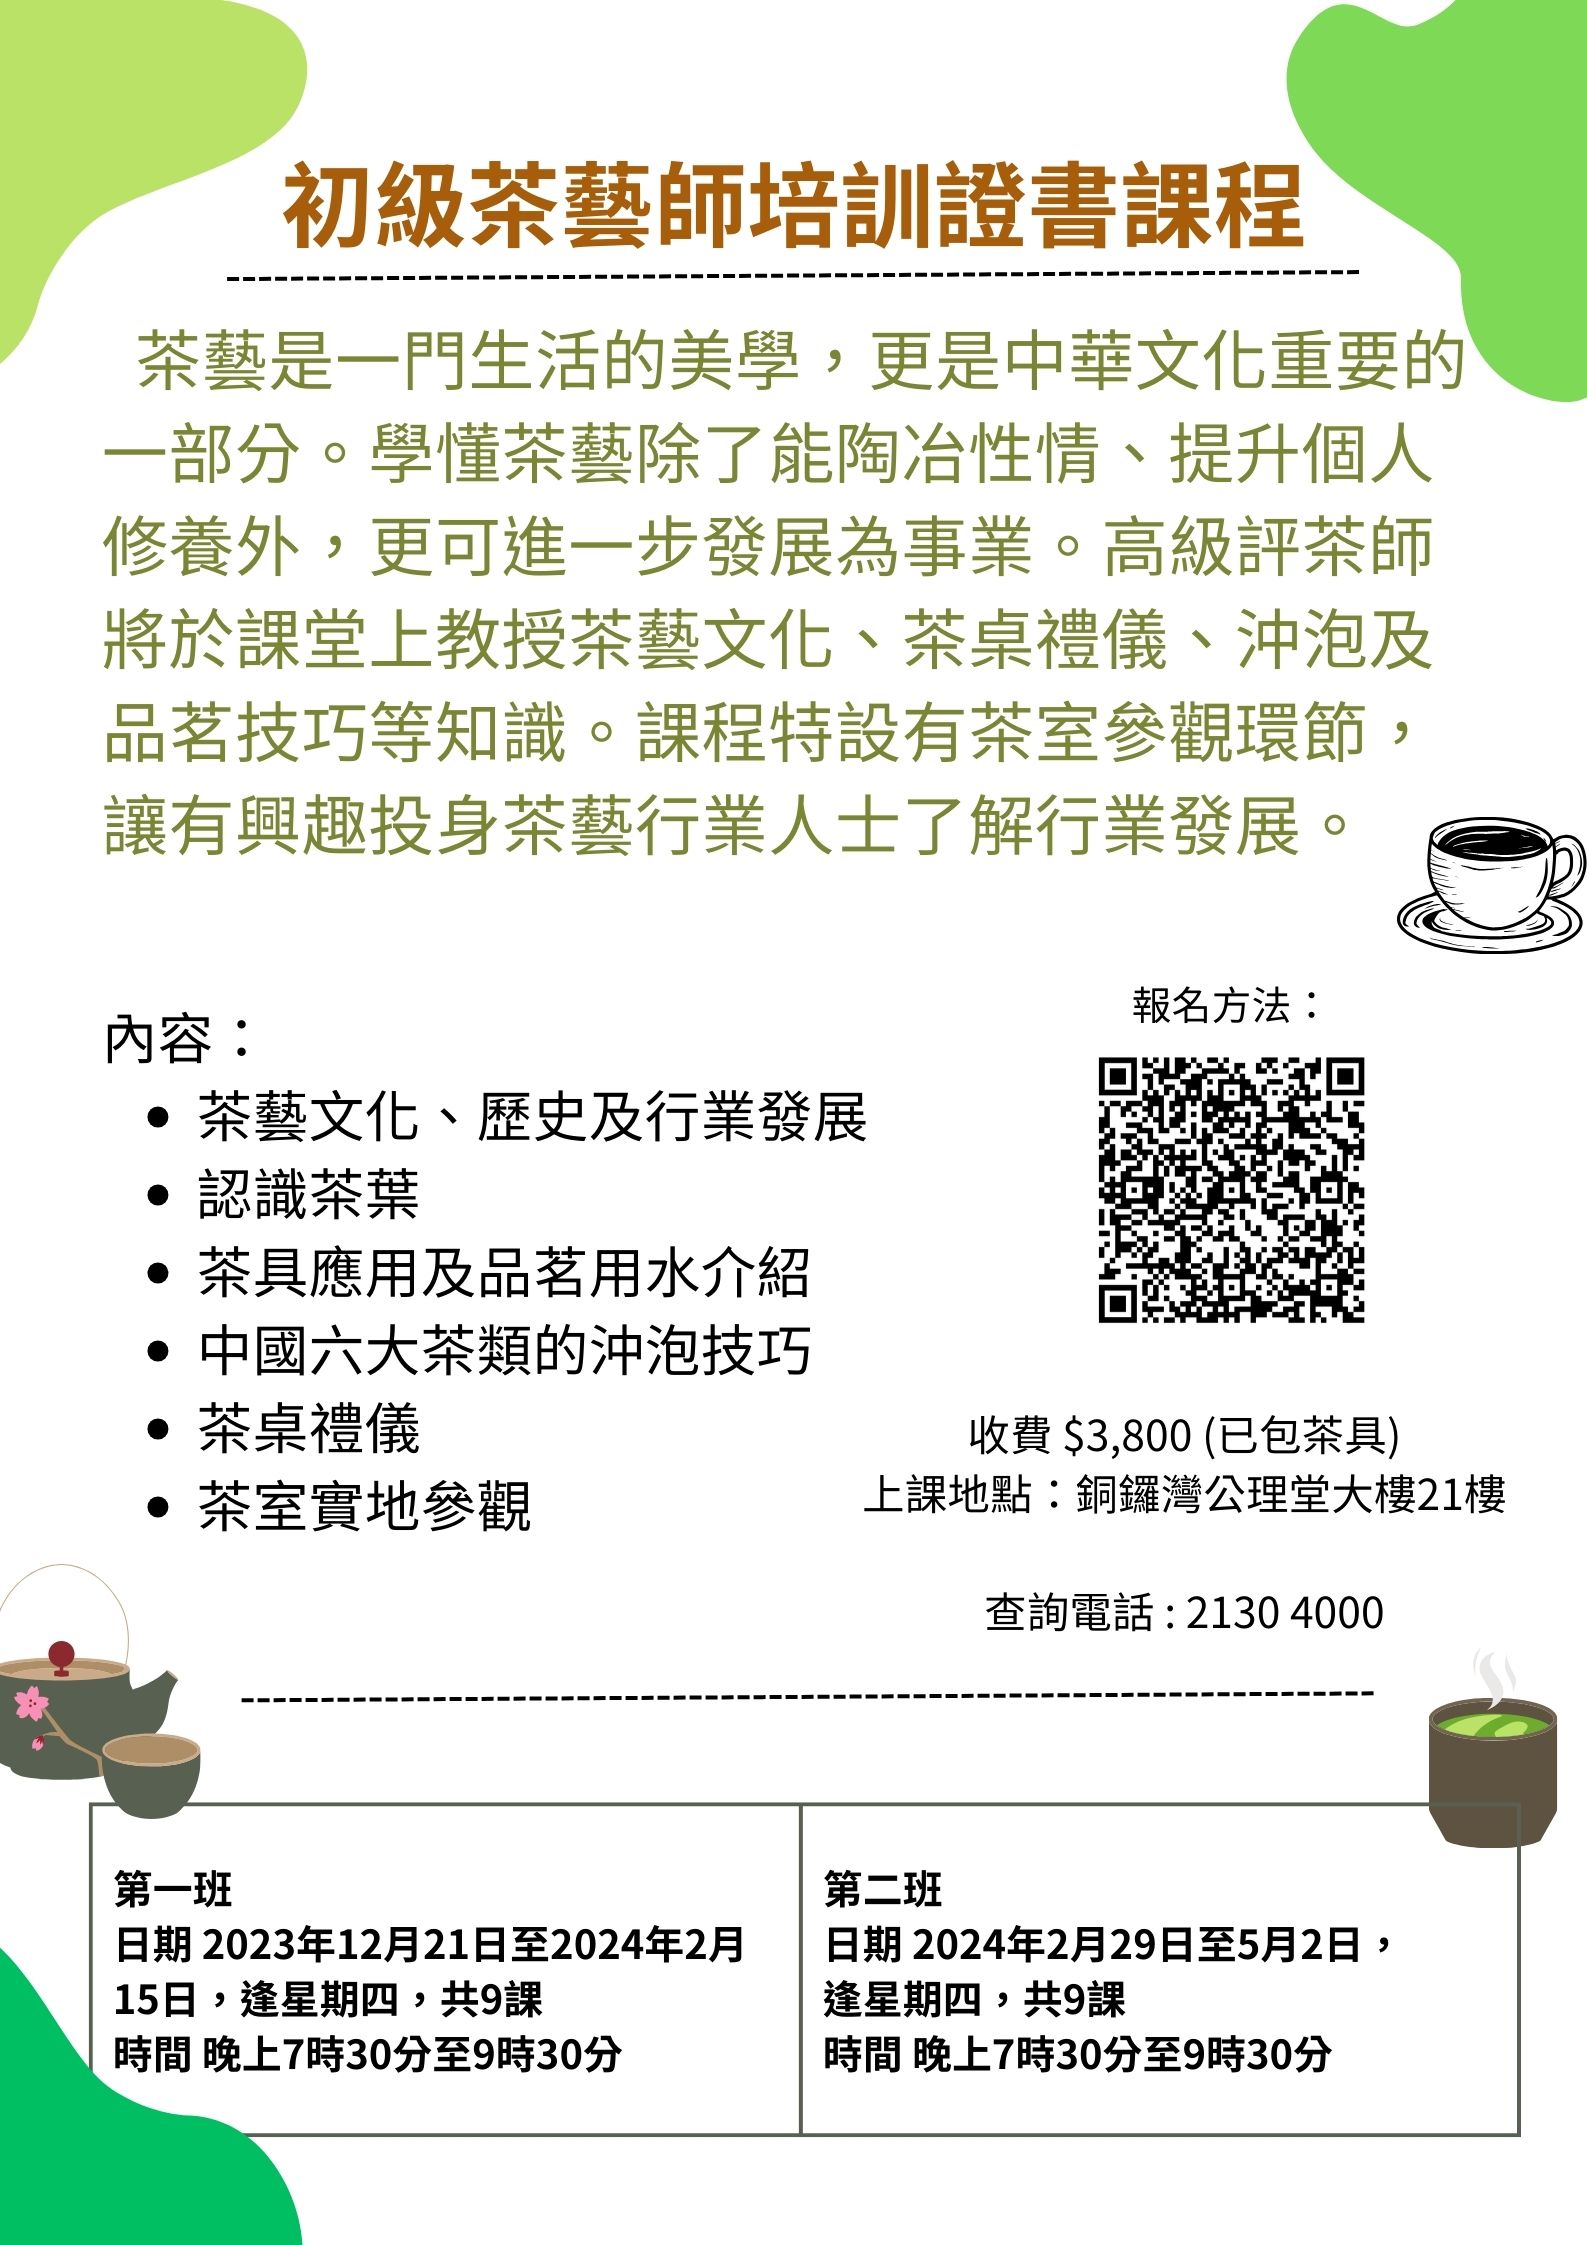 1-4月 初級茶藝師培訓證書課程 .jpg